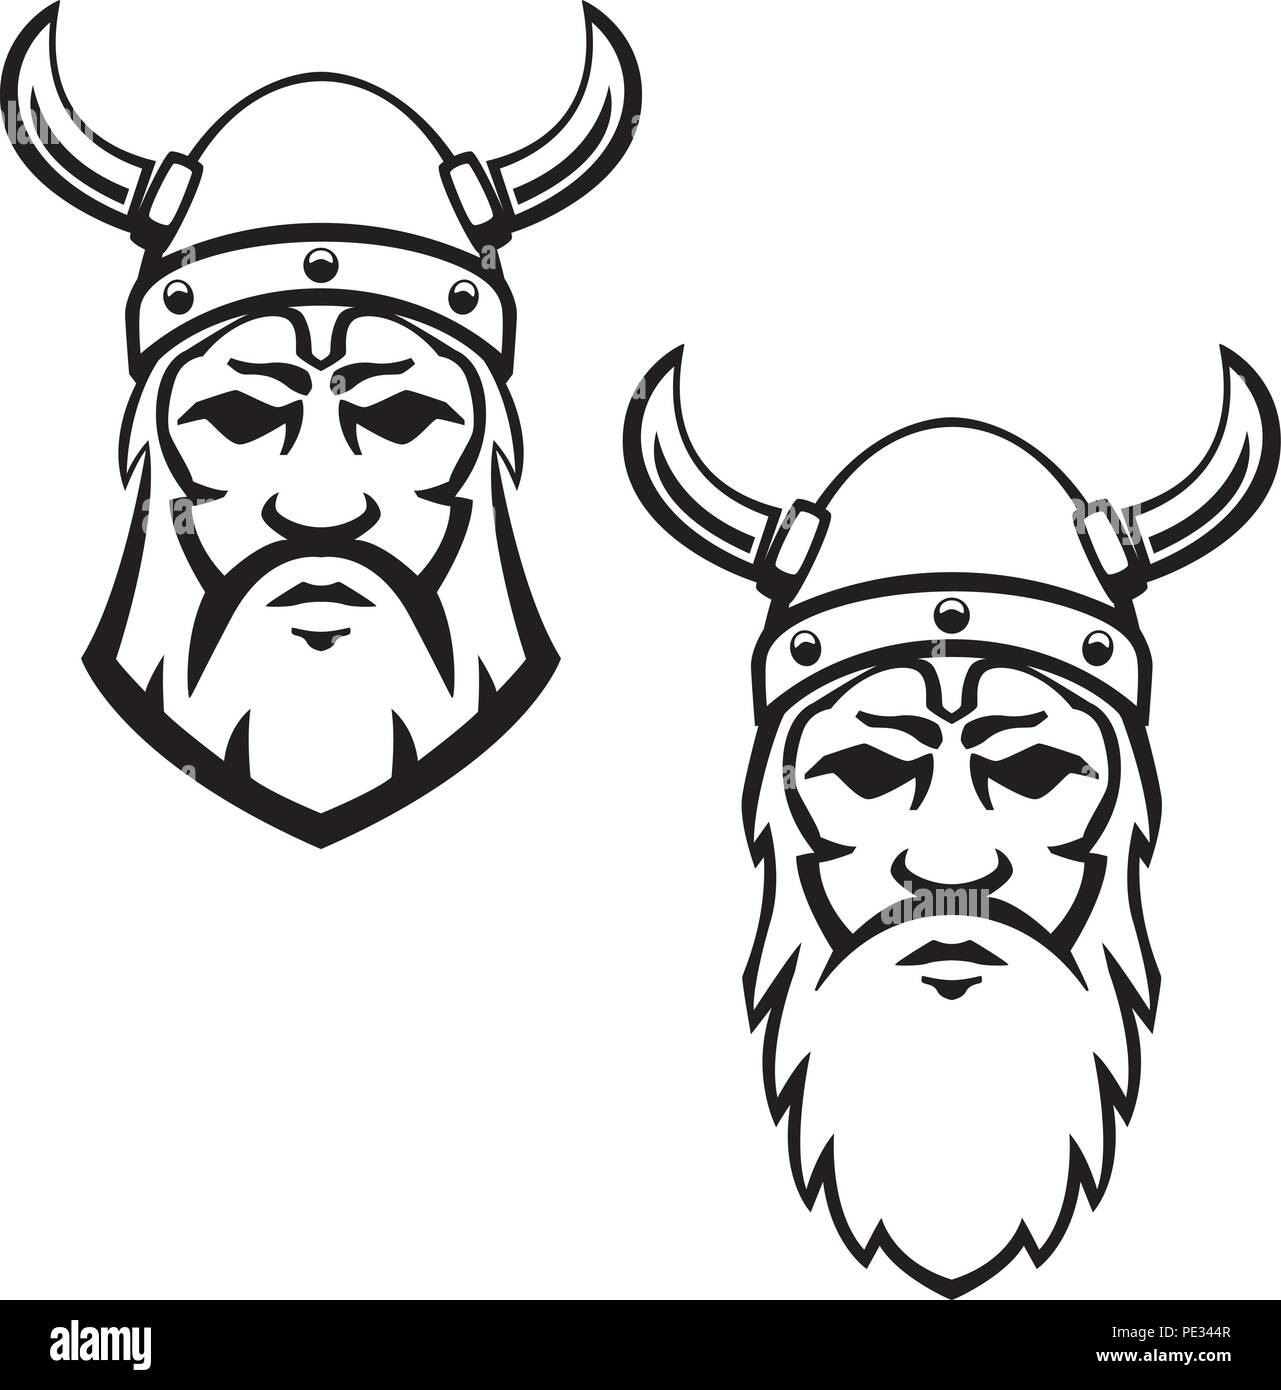 Satz von Viking warrior Kopf. Design Element für Wappen, Zeichen, Abzeichen. Vector Illustration Stock Vektor